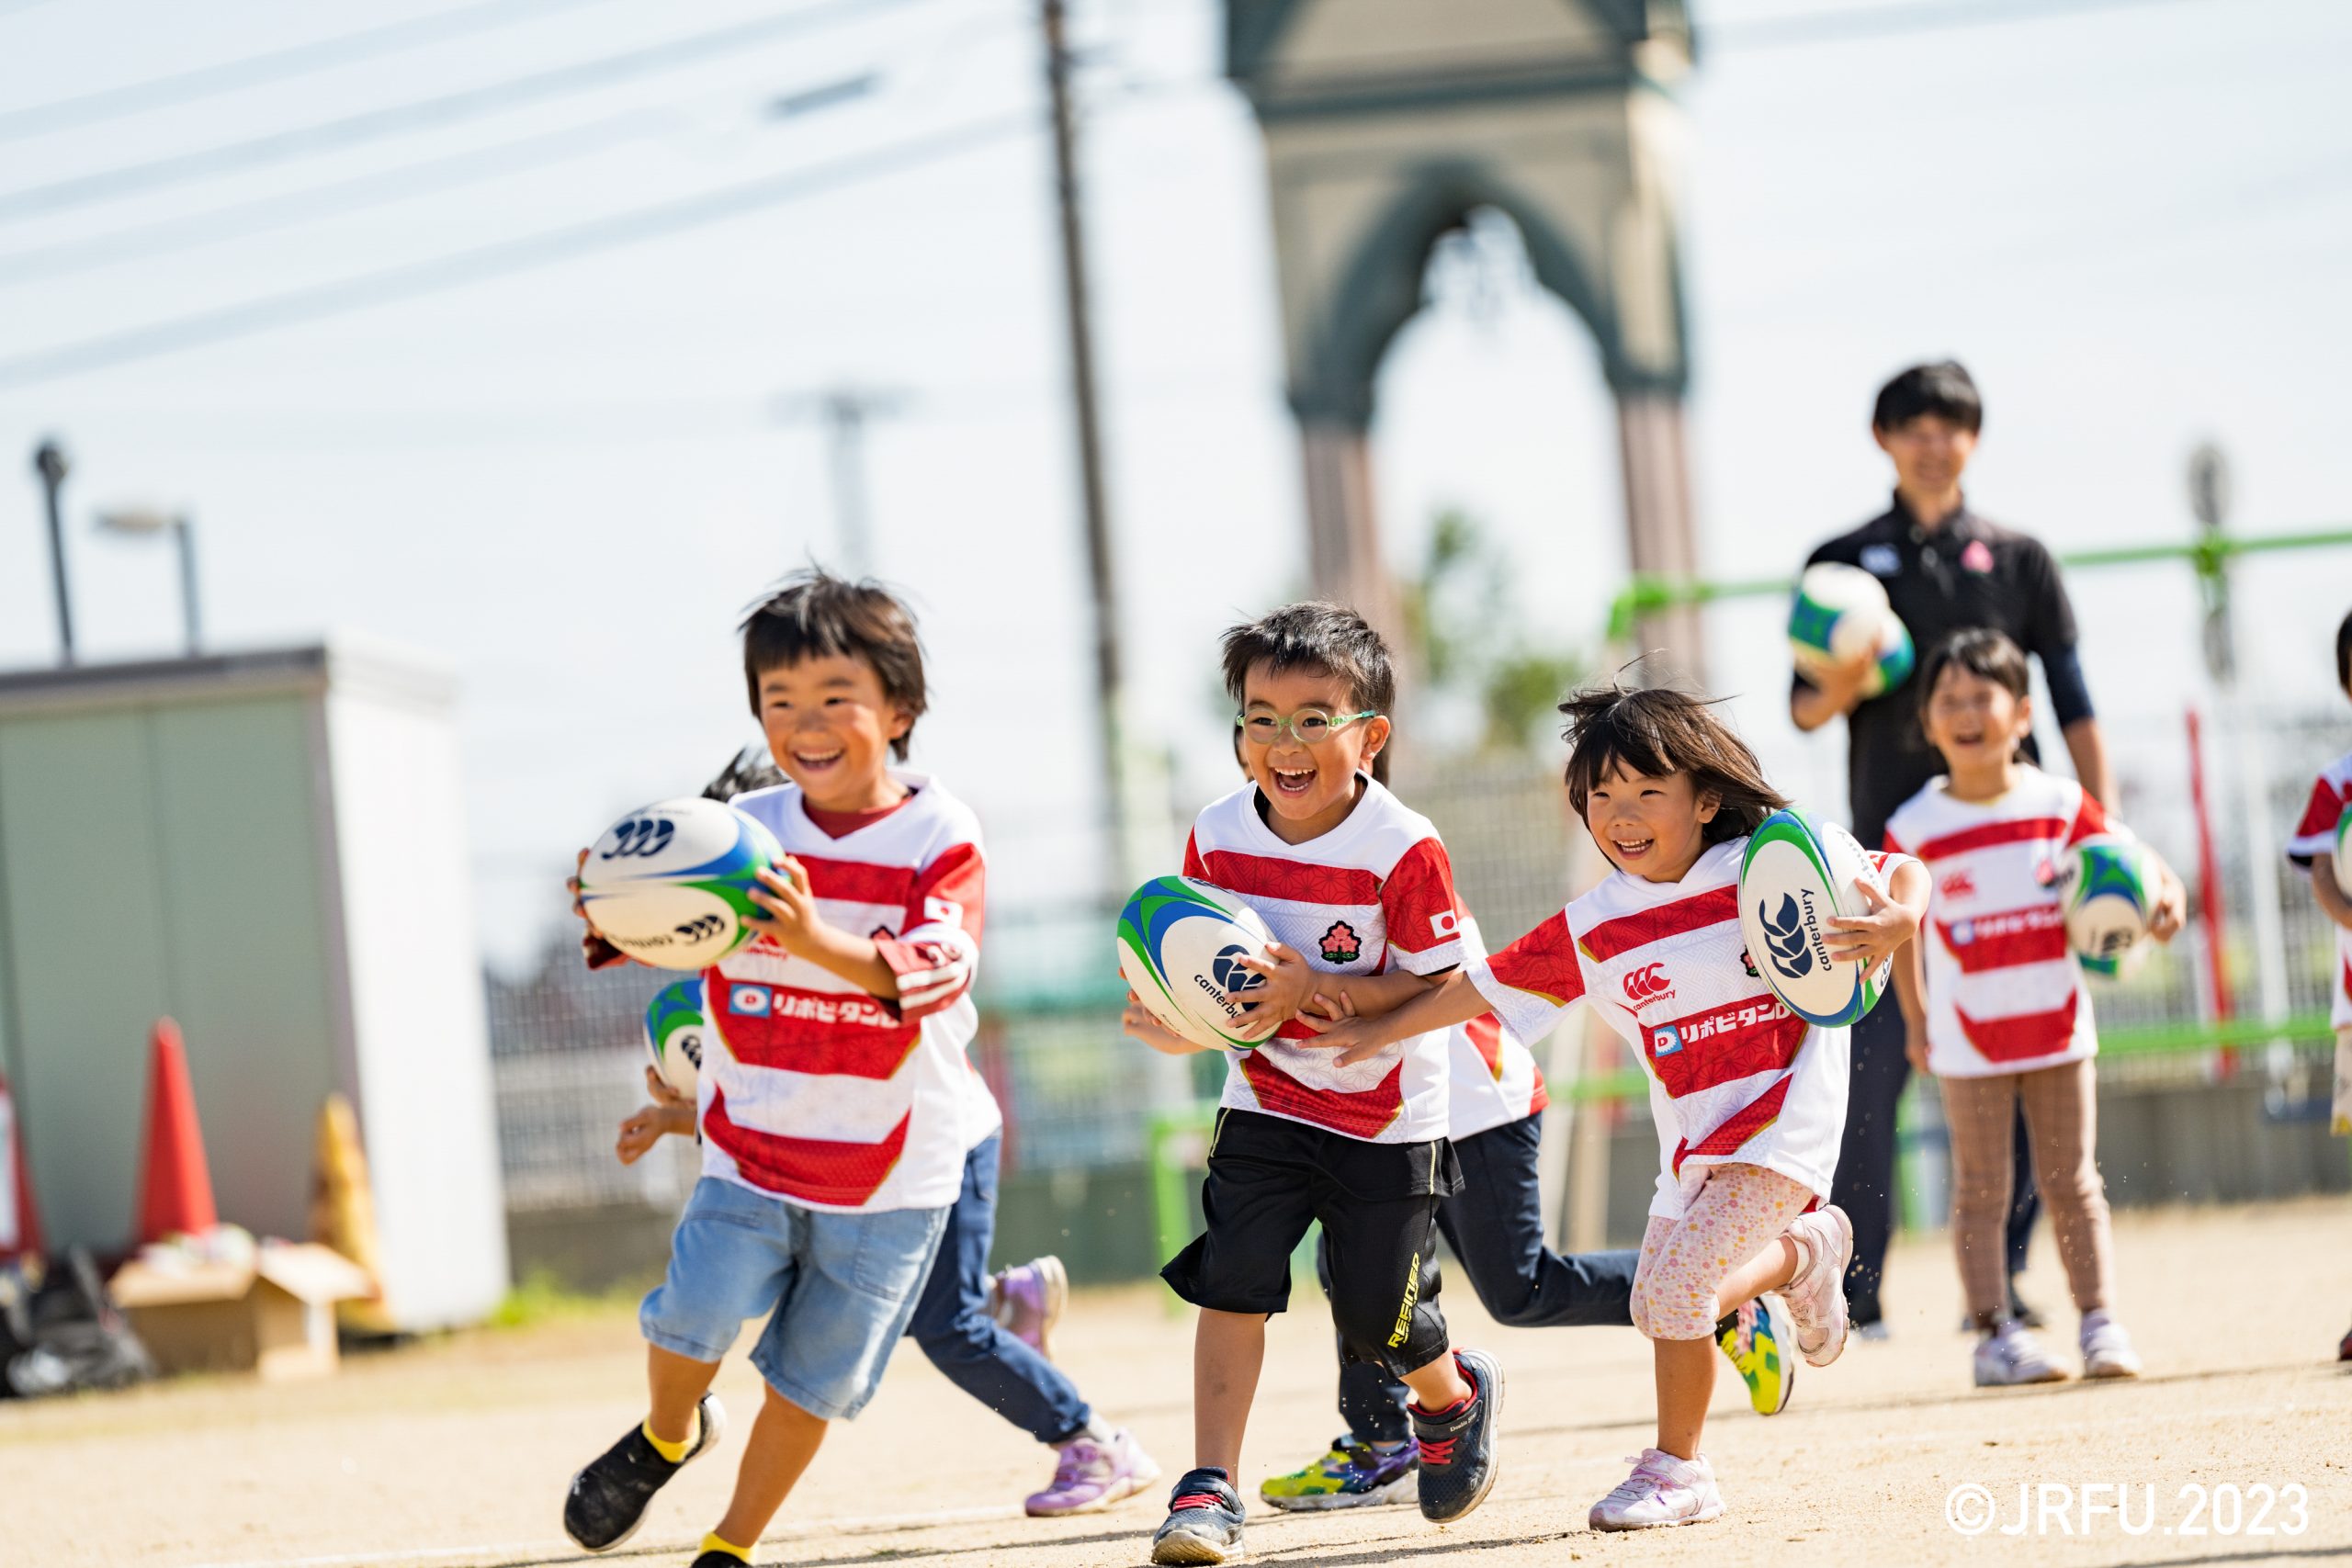 JRFUが行うイベント「Canterbury Rugby Little Playfield」に富山県小矢部市の認定こども園「大谷こども園」が参加。幼児がラグビーに触れる機会を提供する本イベントの模様をお届けします。